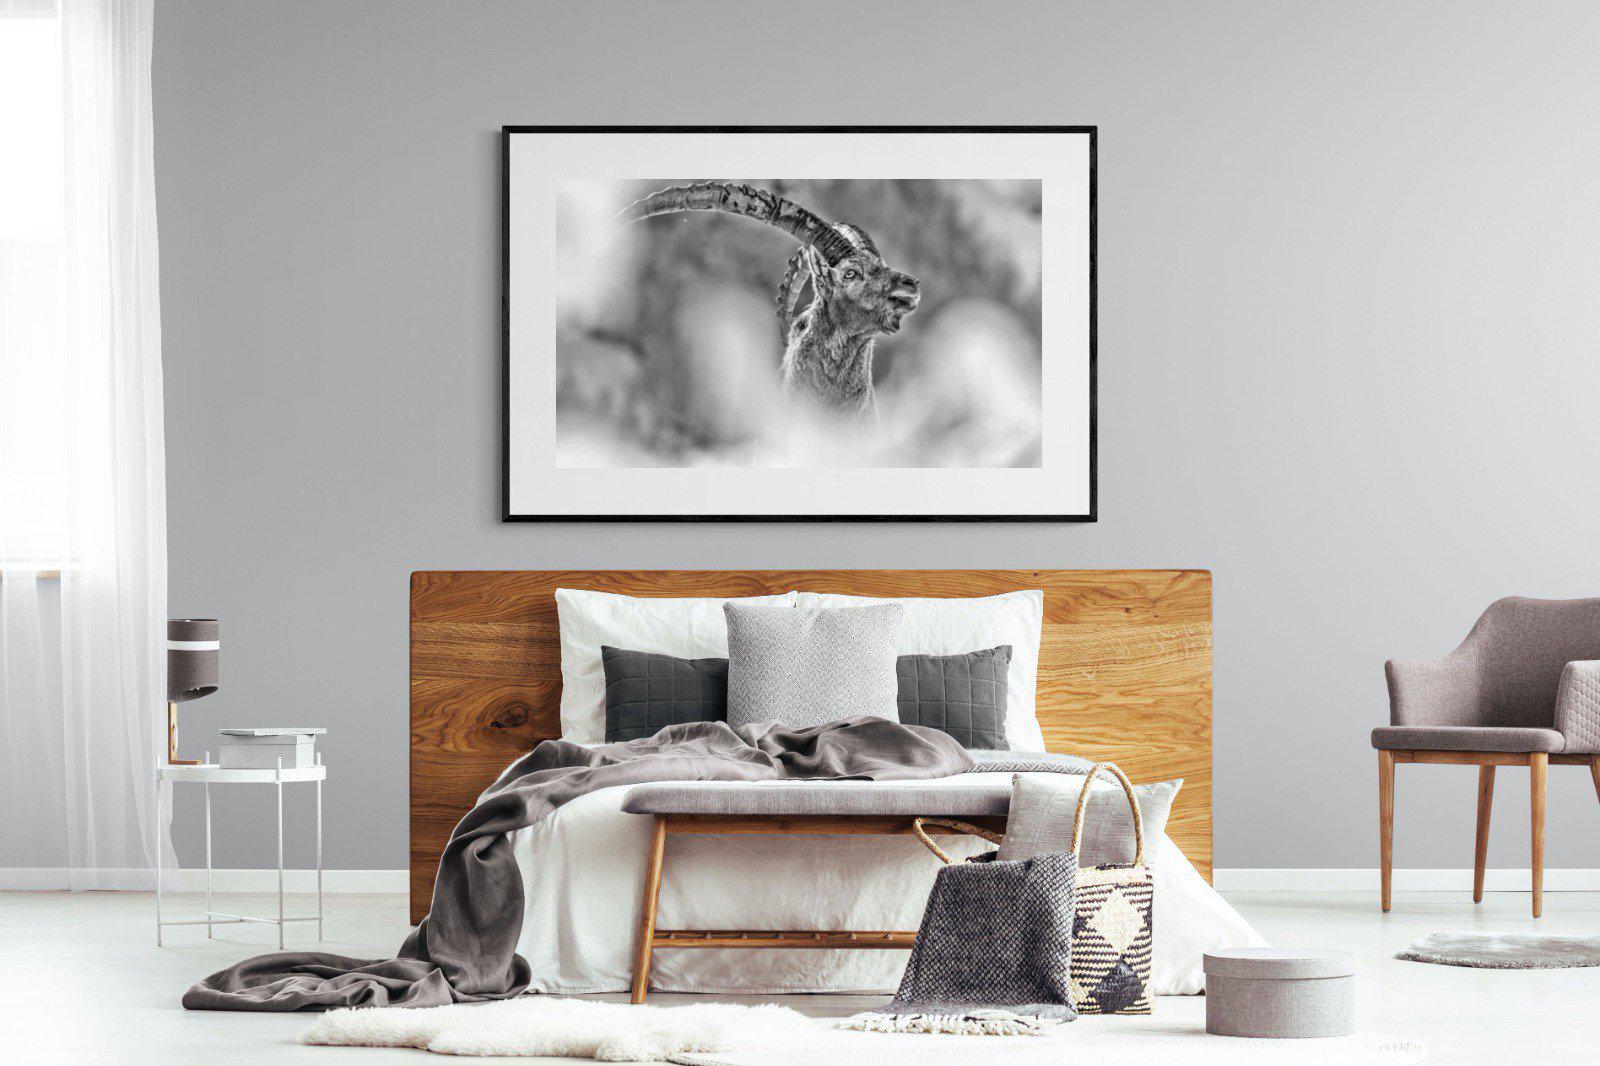 Ibex-Wall_Art-150 x 100cm-Framed Print-Black-Pixalot